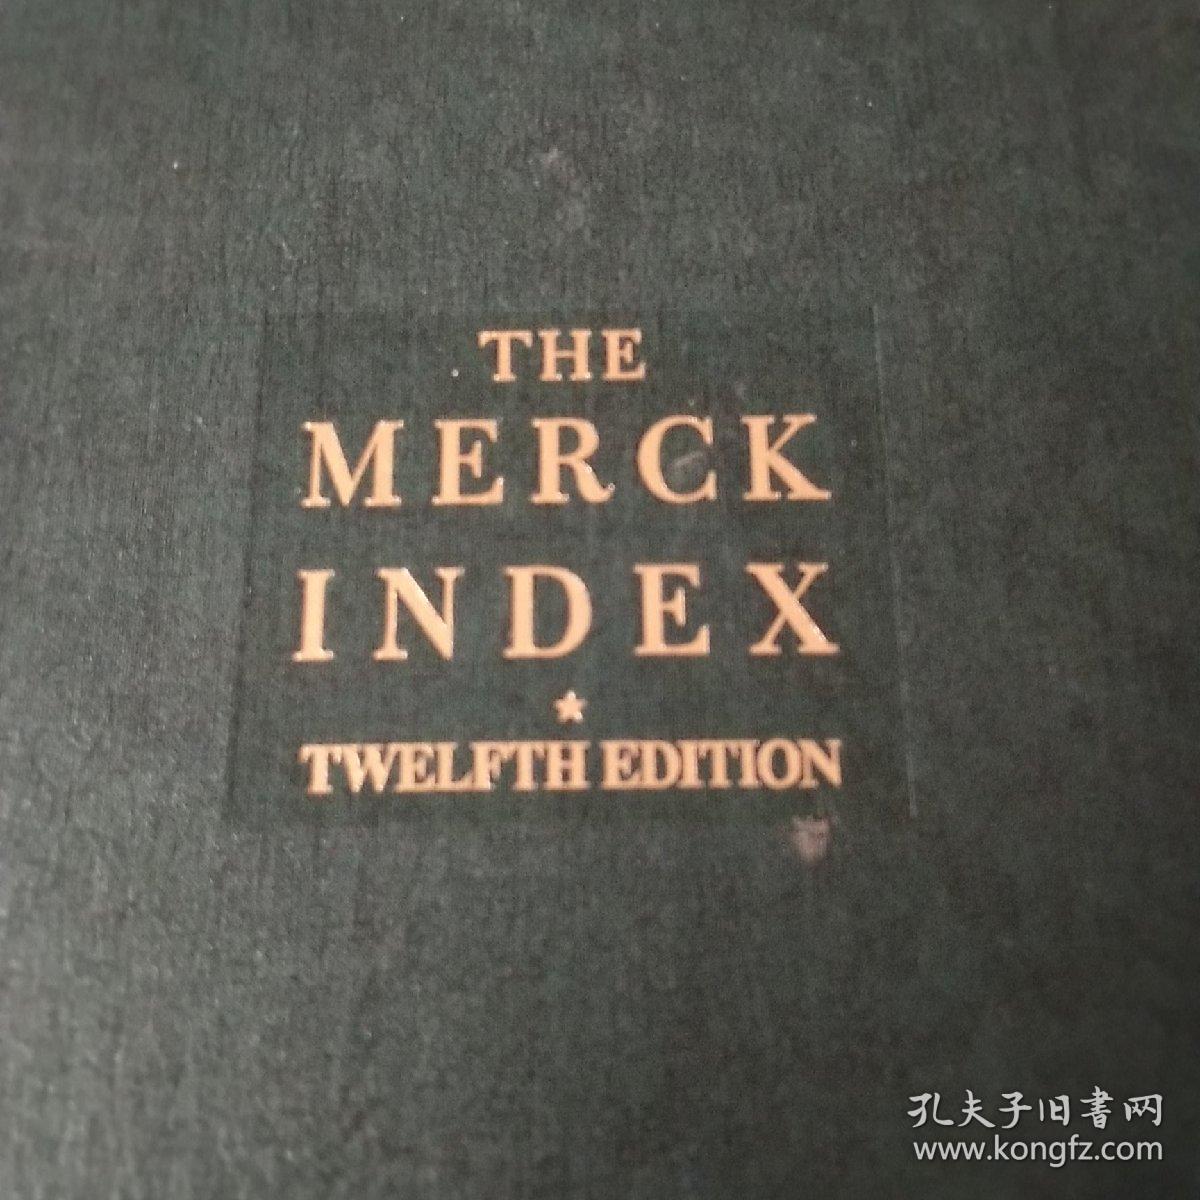 THE MERCKlNDEX